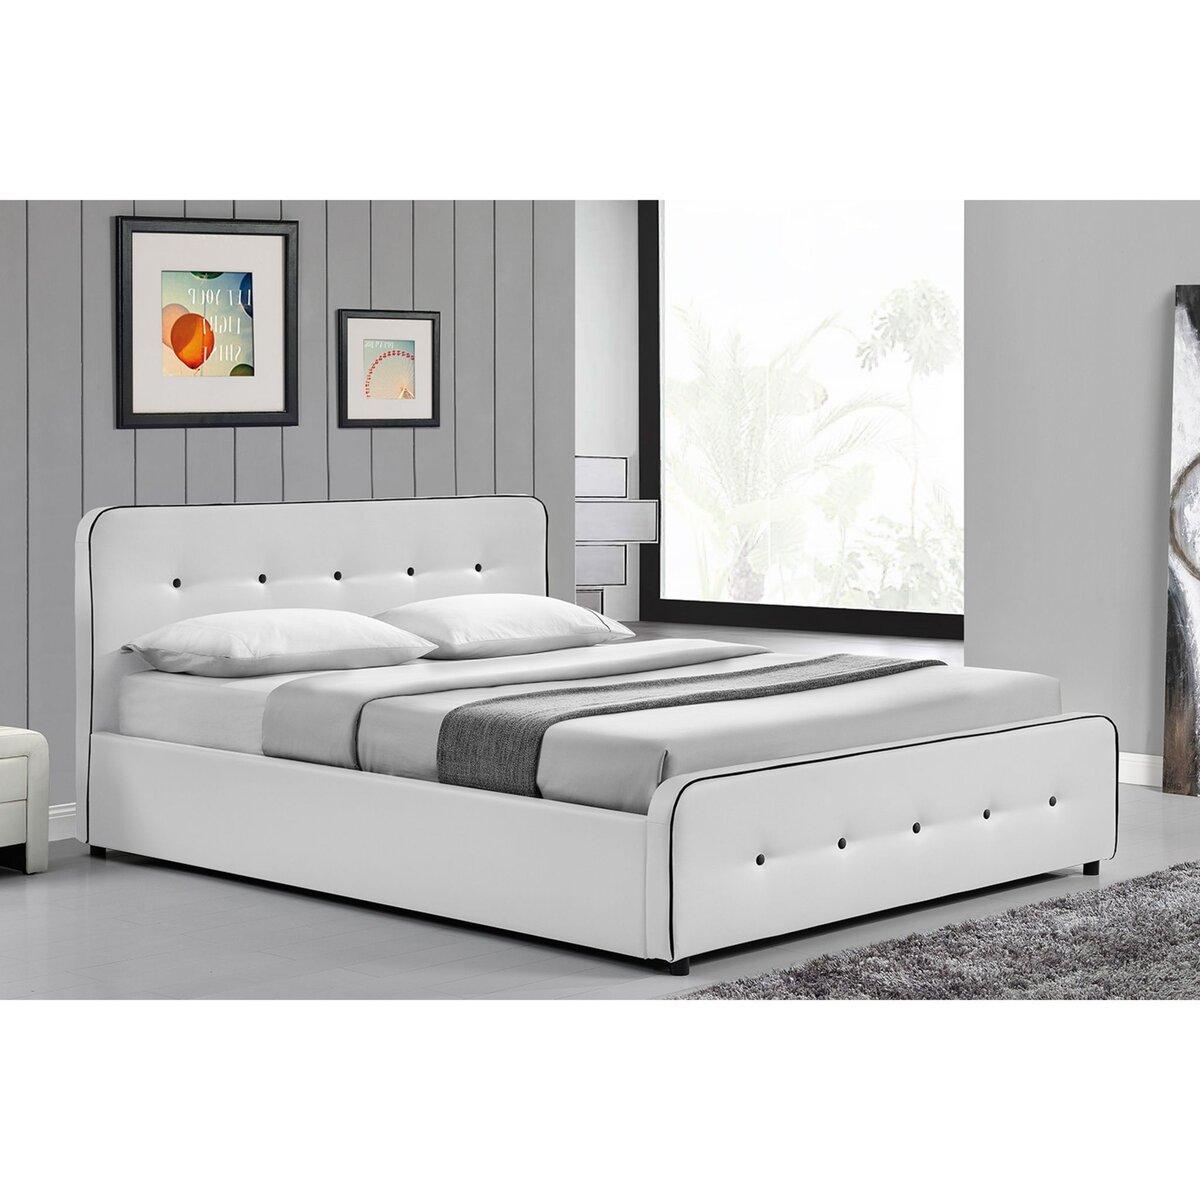 CONCEPT USINE Lit London - Structure de lit capitonnée Blanc avec coffre de rangement intégré - 140x190 cm